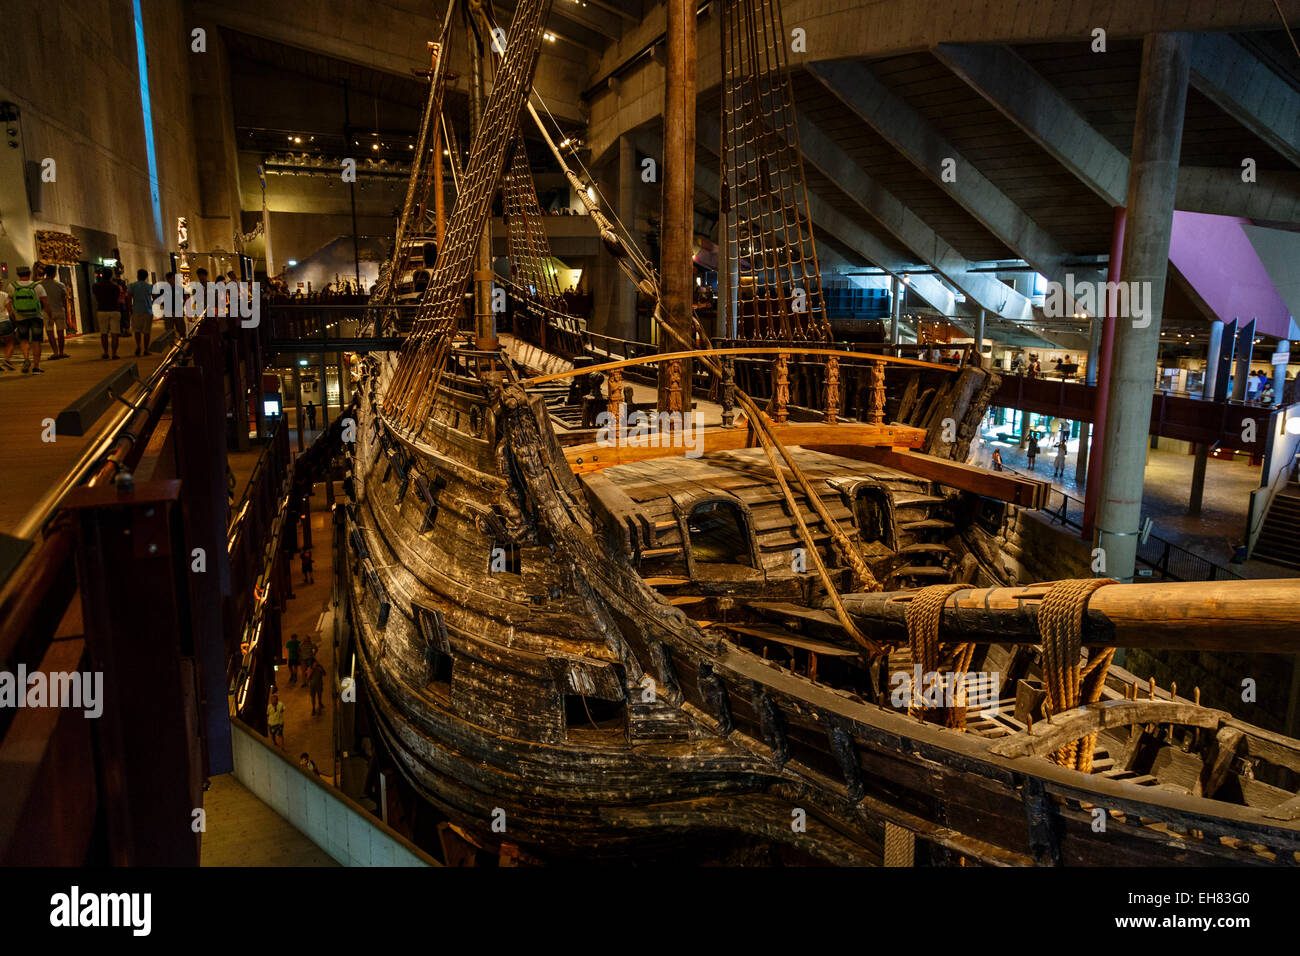 Vasa Museum, Djurgarden, Stockholm, Sweden, Scandinavia, Europe Stock Photo